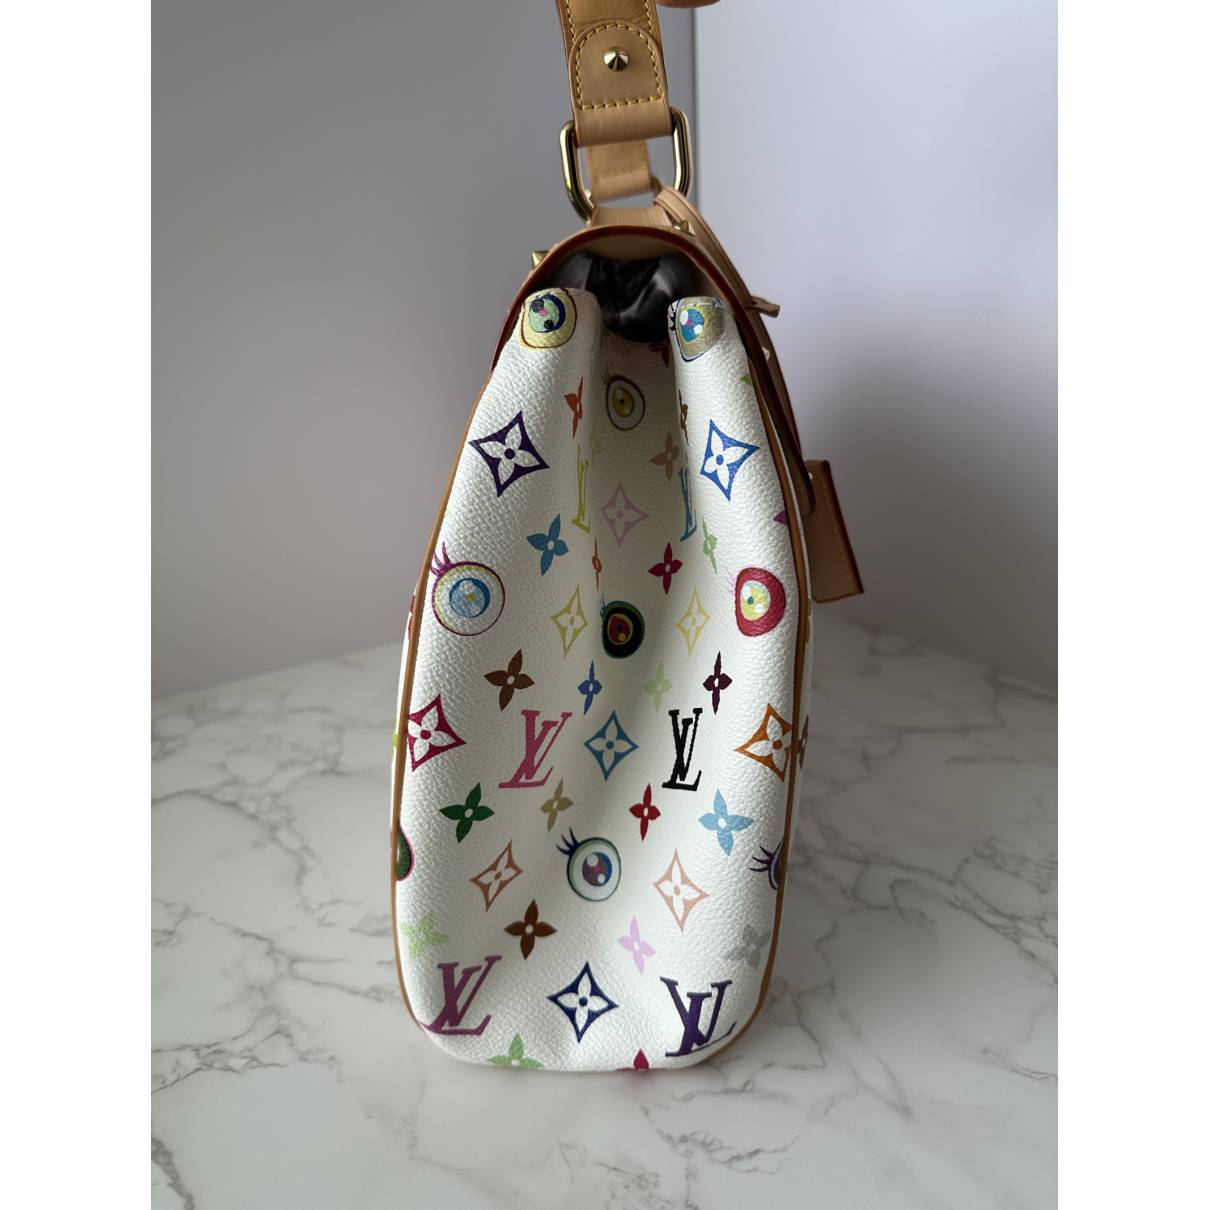 Eye love you cloth handbag Louis Vuitton Multicolour in Cloth